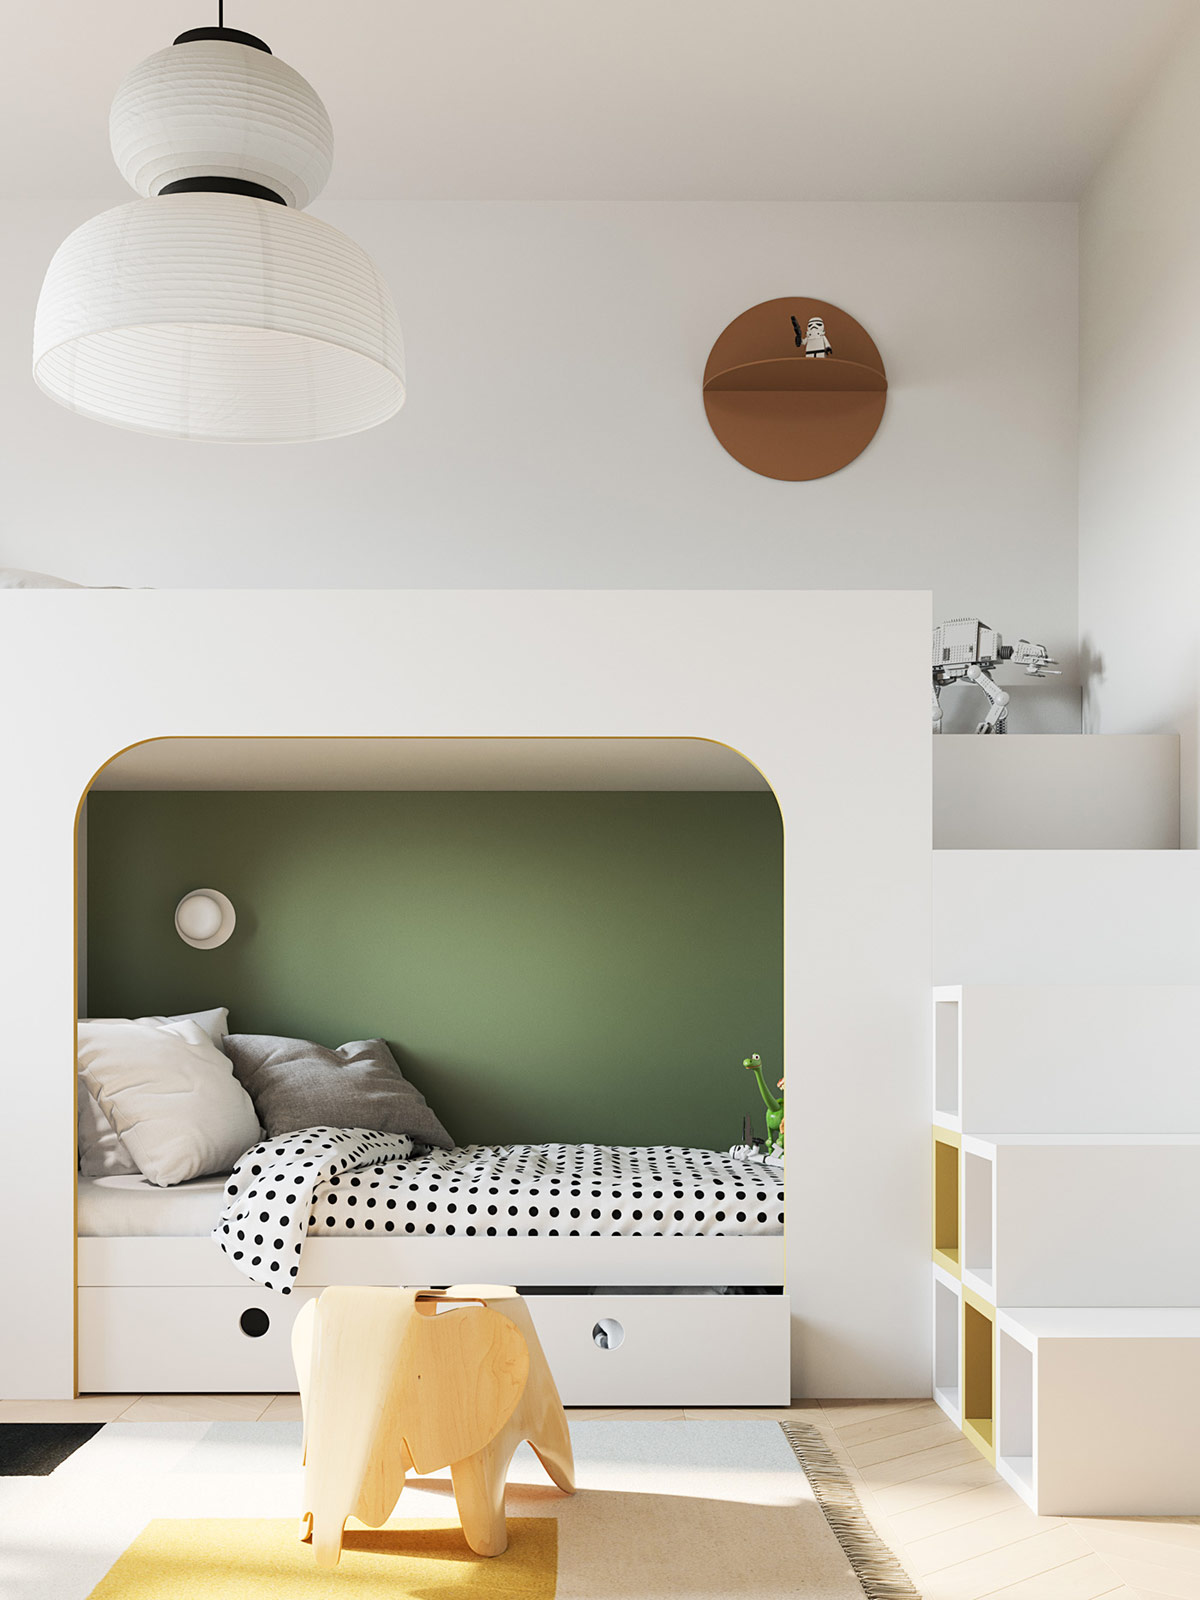 Những đường cong mềm mại của mái vòm cũng được xuất hiện trong phòng của trẻ nhỏ, cụ thể là nơi giường ngủ. Mảng tường sơn màu xanh lá vừa dịu mắt vừa góp phần tạo chiều sâu cho căn phòng.